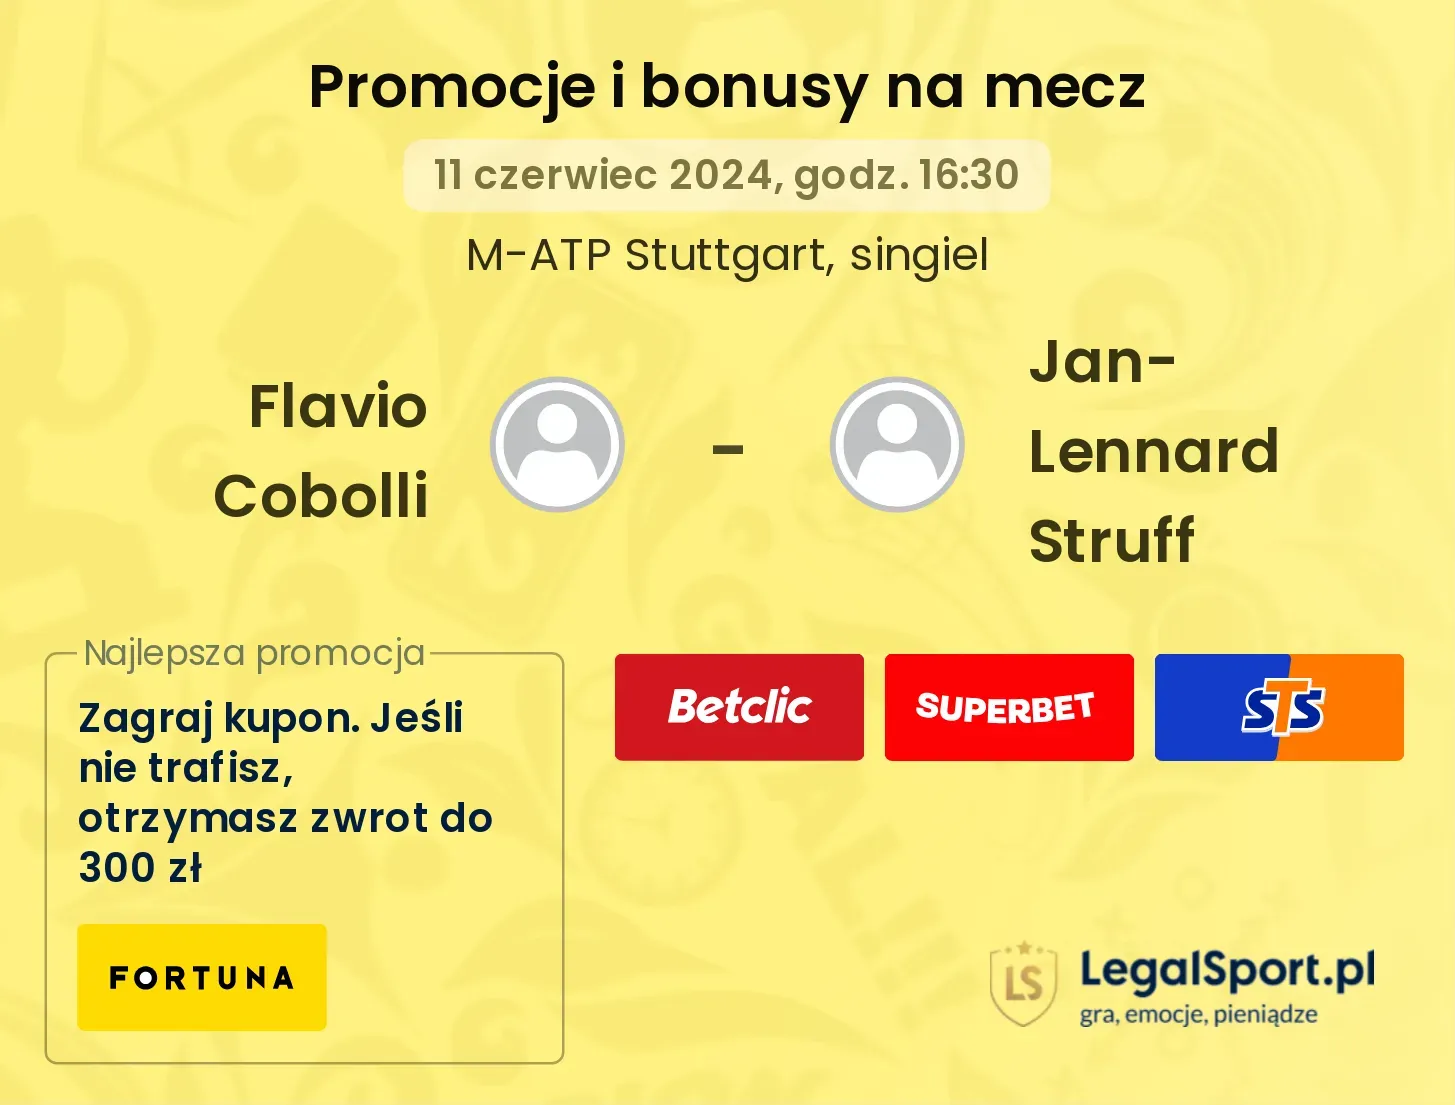 Flavio Cobolli - Jan-Lennard Struff promocje bonusy na mecz